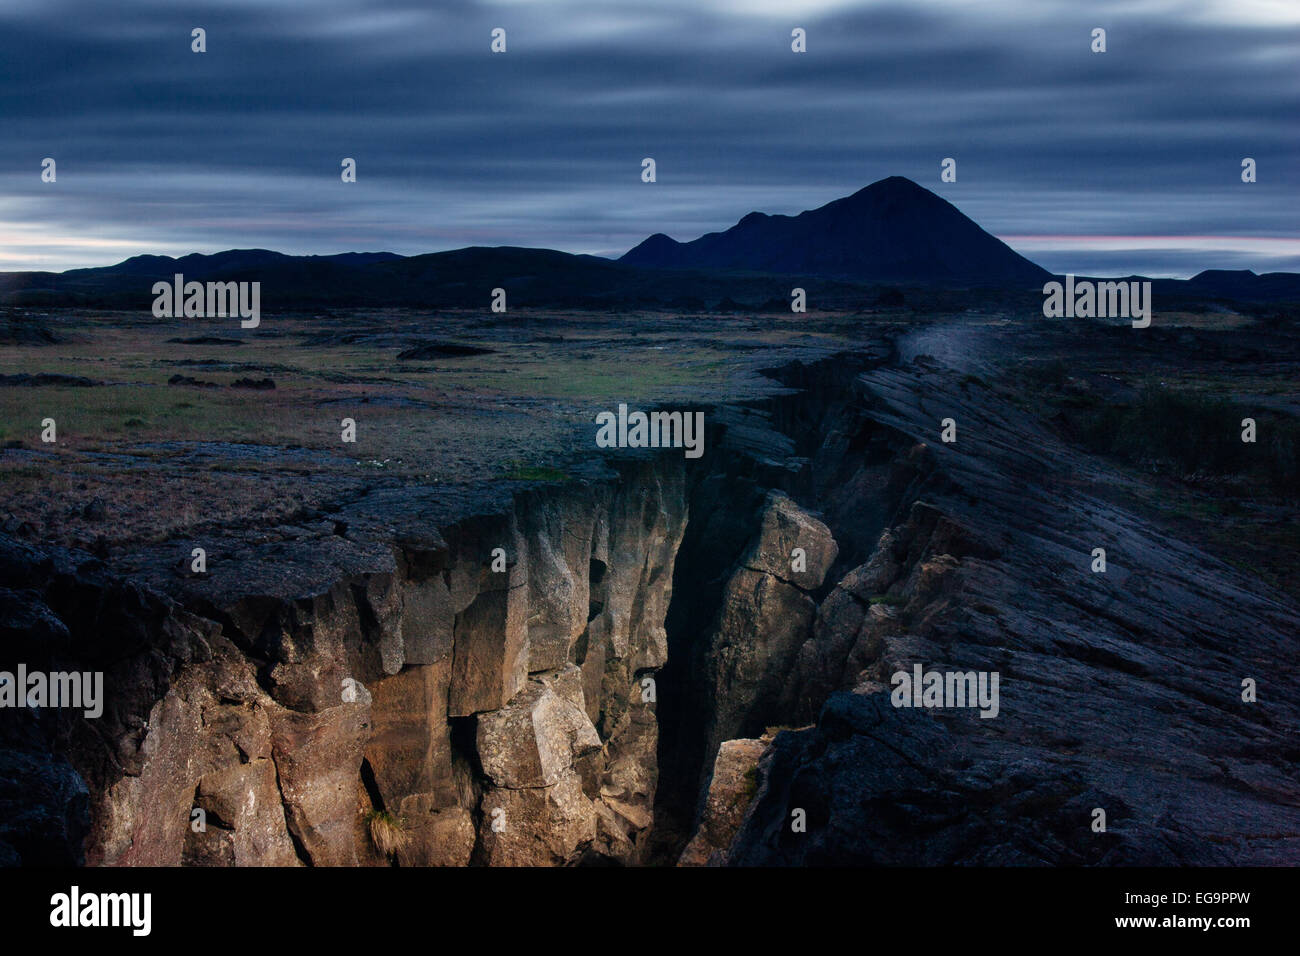 Divergierende Platten in einer vulkanischen Spalte Zone, Myvatn, Island die Risse mit einem Blitzlicht, Myvatn Island erleuchtete Stockfoto